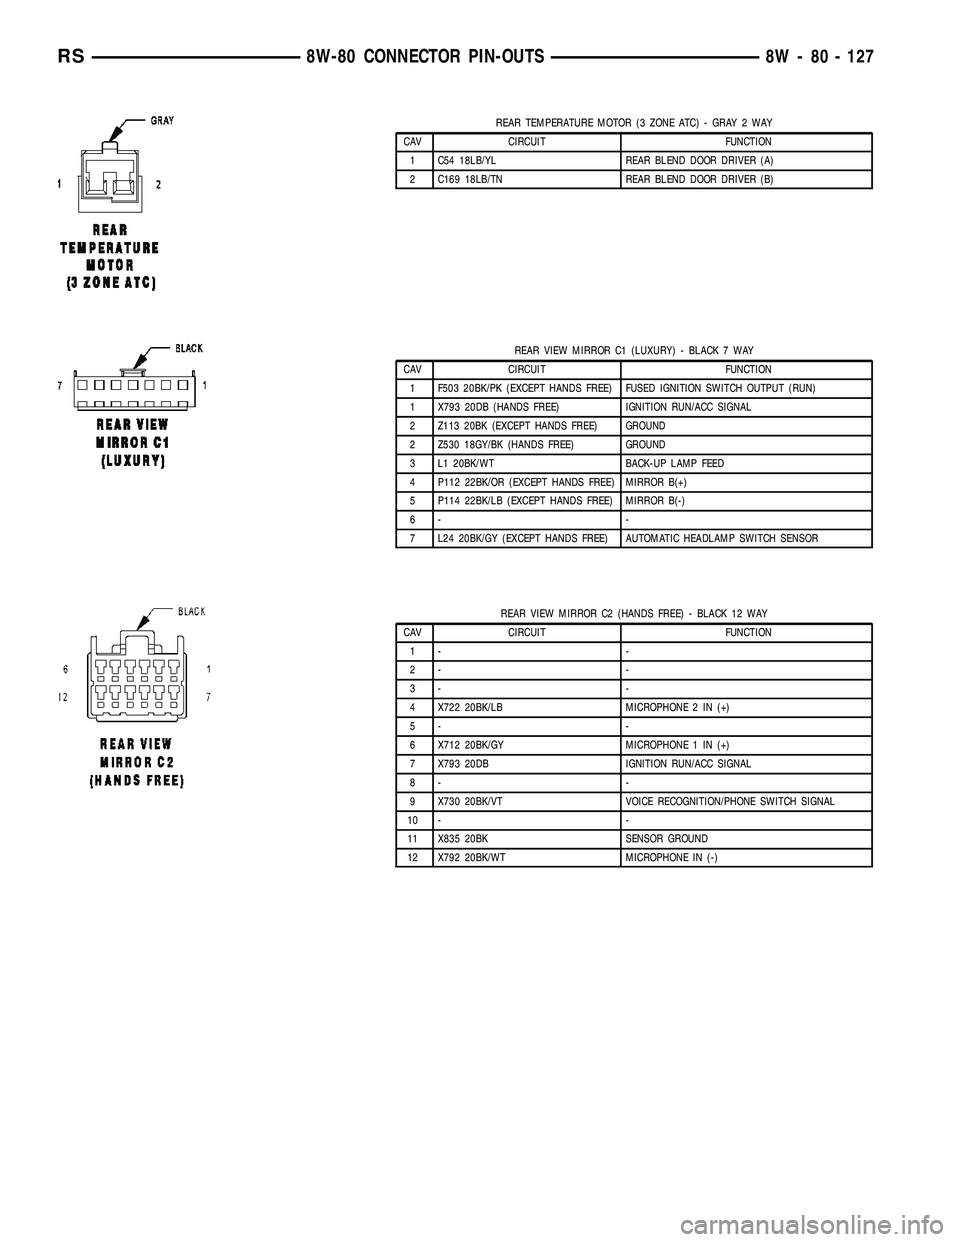 CHRYSLER VOYAGER 2005  Service Manual REAR TEMPERATURE MOTOR (3 ZONE ATC) - GRAY 2 WAY
CAV CIRCUIT FUNCTION
1 C54 18LB/YL REAR BLEND DOOR DRIVER (A)
2 C169 18LB/TN REAR BLEND DOOR DRIVER (B)
REAR VIEW MIRROR C1 (LUXURY) - BLACK 7 WAY
CAV 